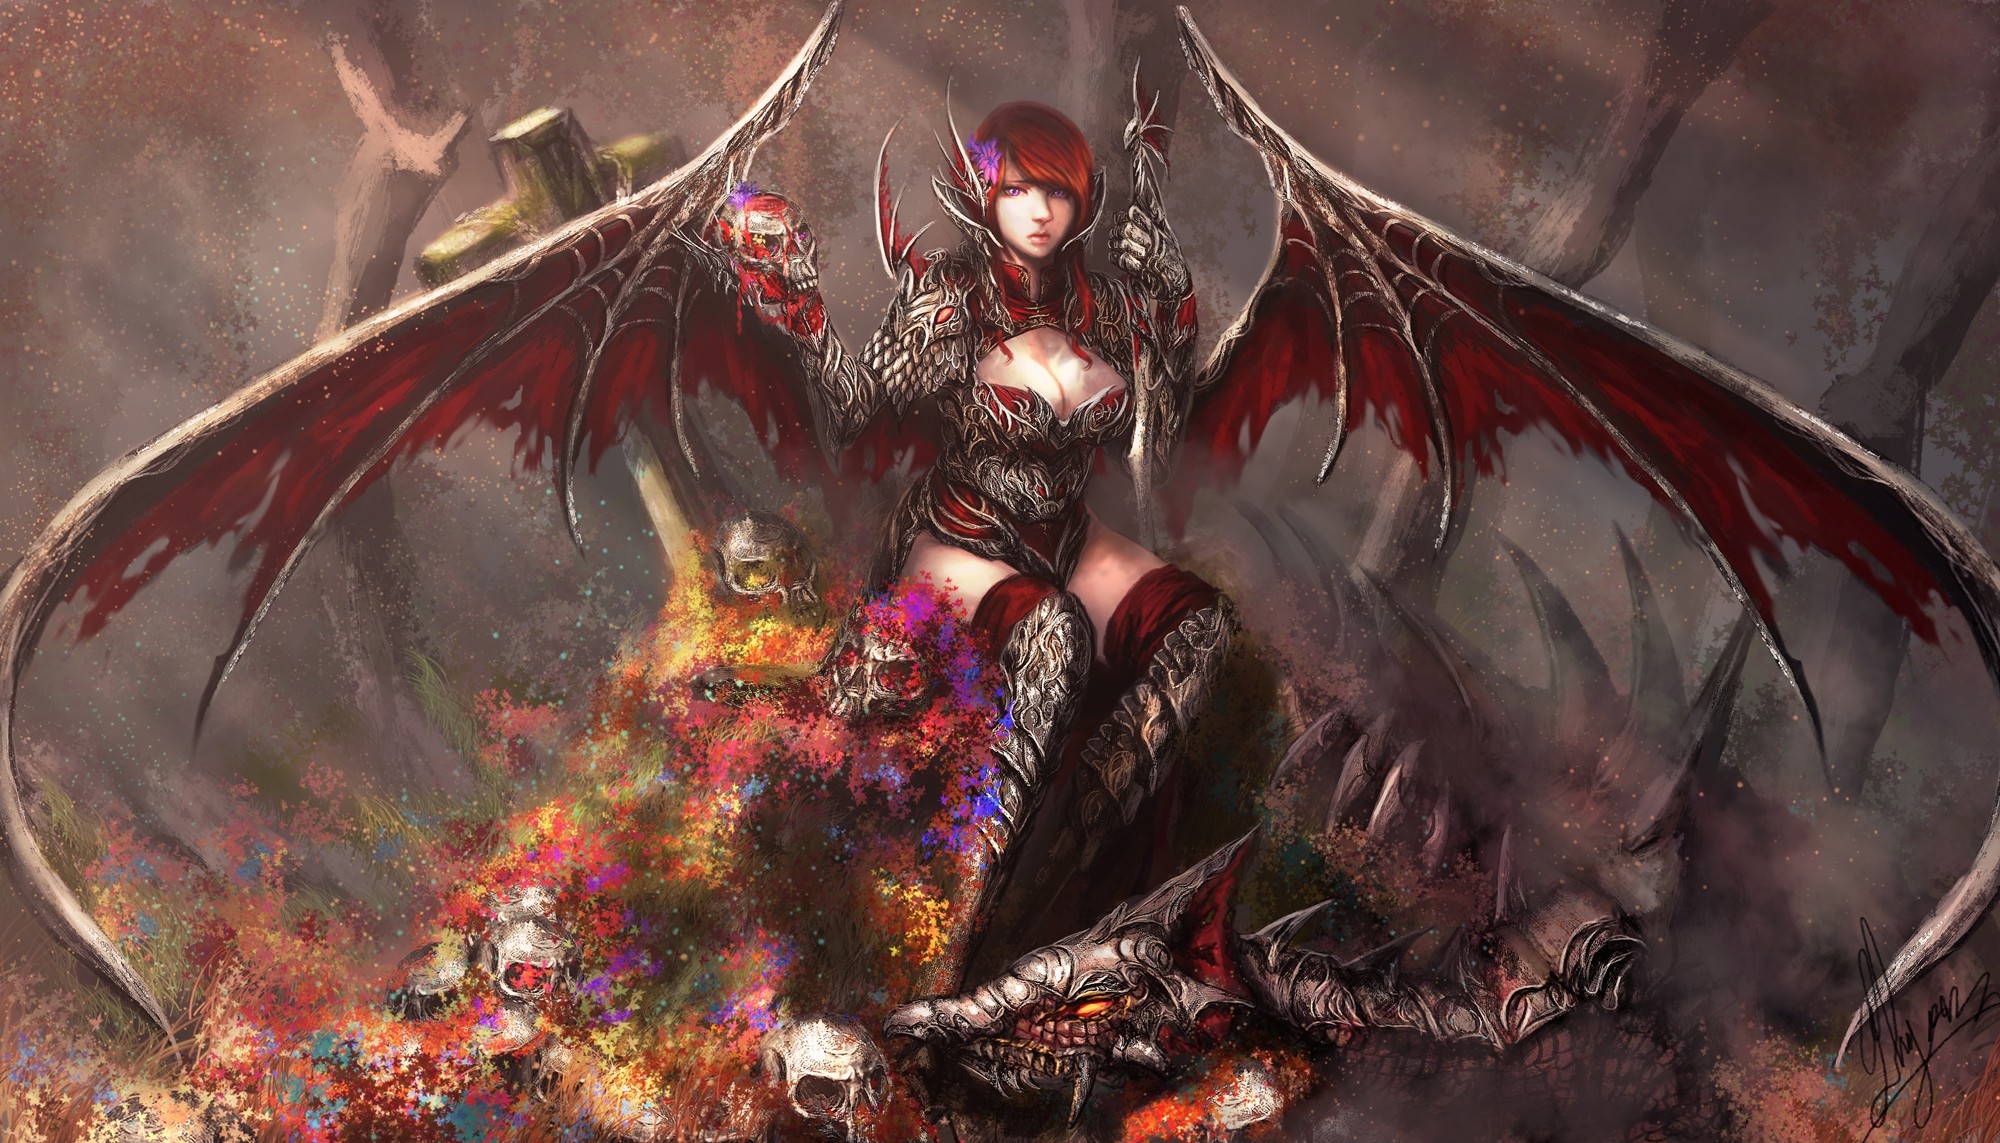 General 2000x1143 fantasy art fantasy girl demon succubus skull boobs wings demon girls DeviantArt redhead